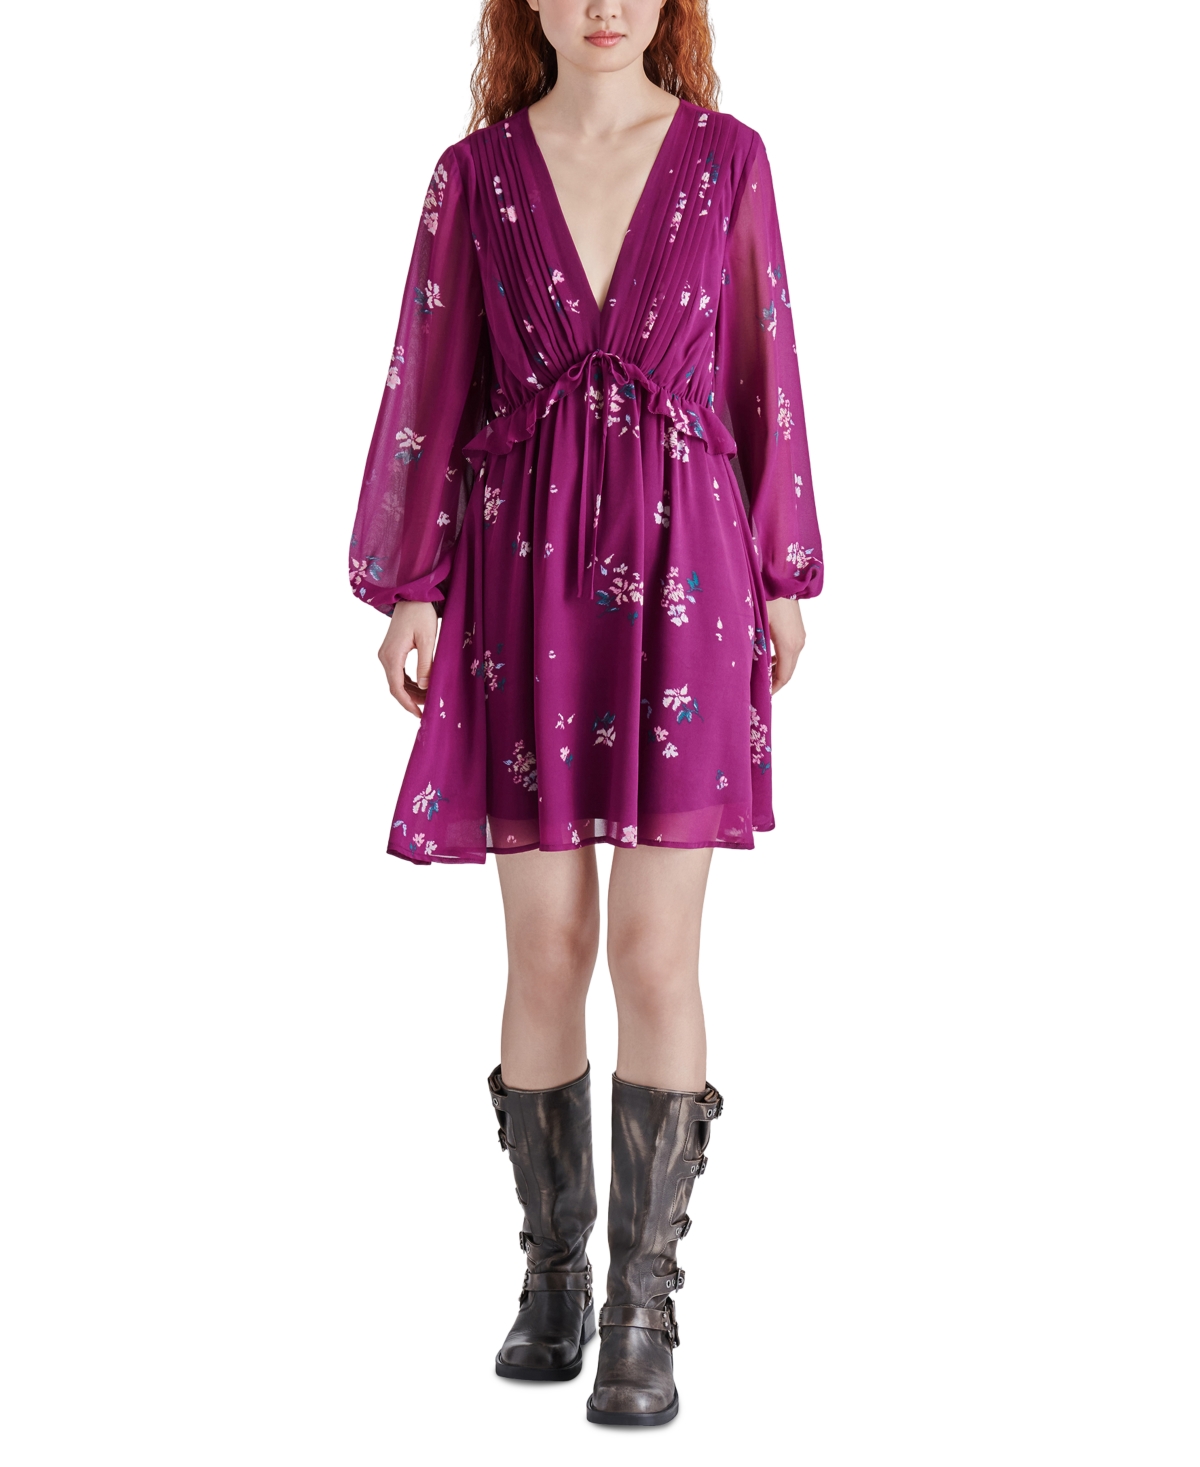 Steve Madden Women's Rami Chiffon Pintuck-detail Floral-print Dress In Plum